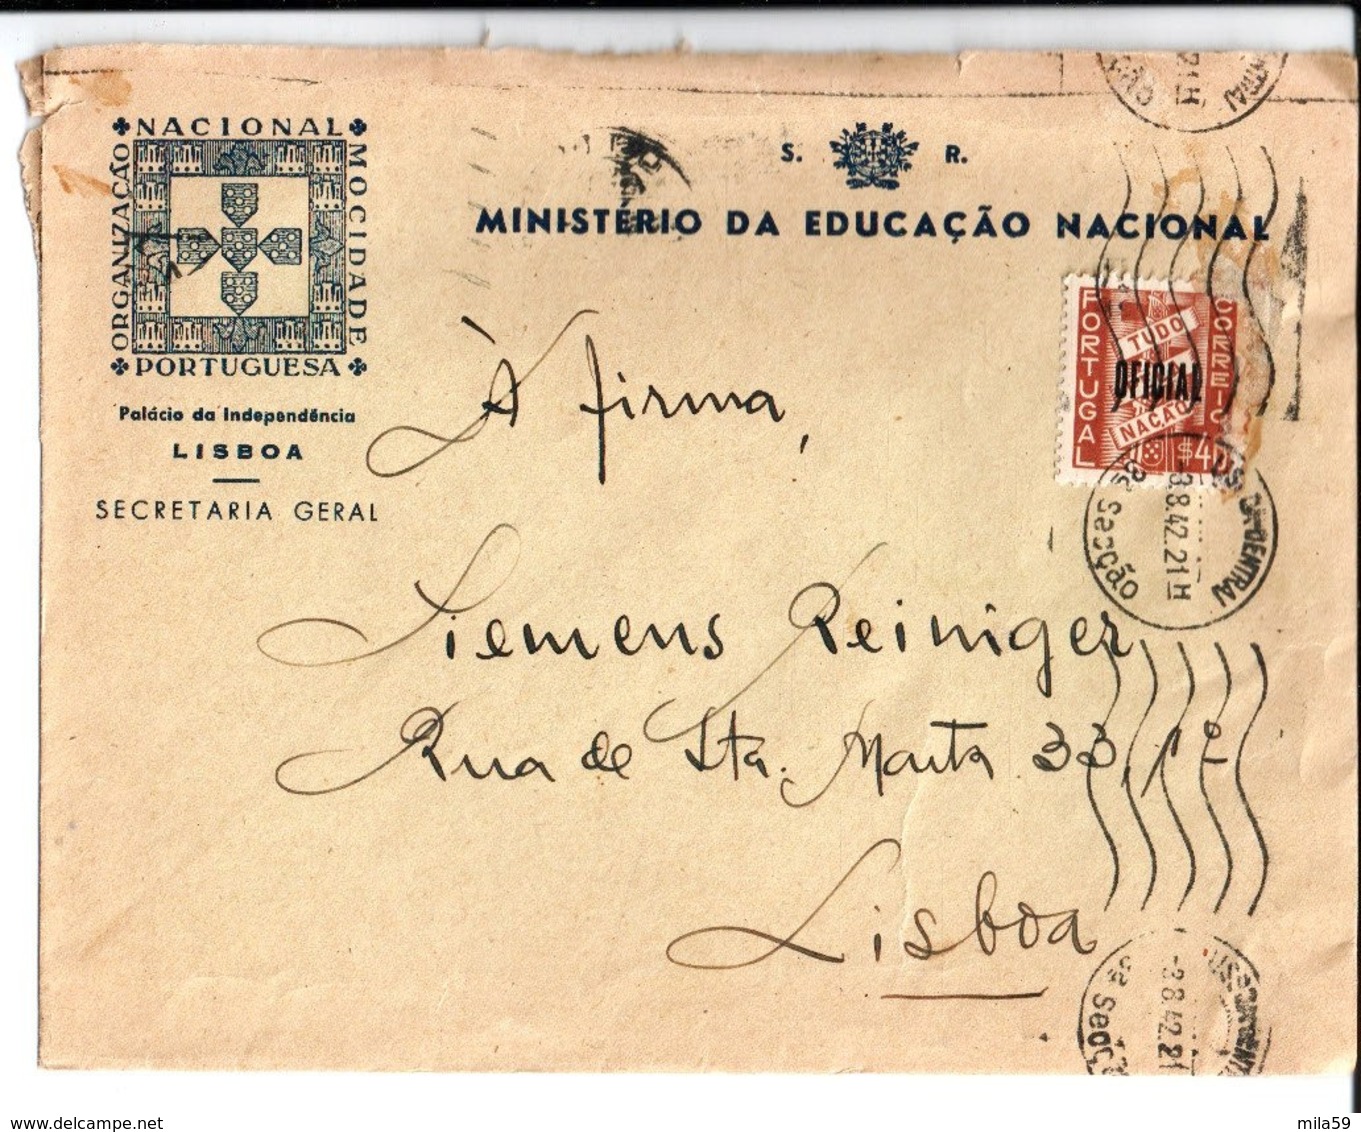 Ministerio Da Educaçao Nacional. A Firma Siemens Reiniger Lisboa. Palacio Da Independencia. 1942. - Portugal